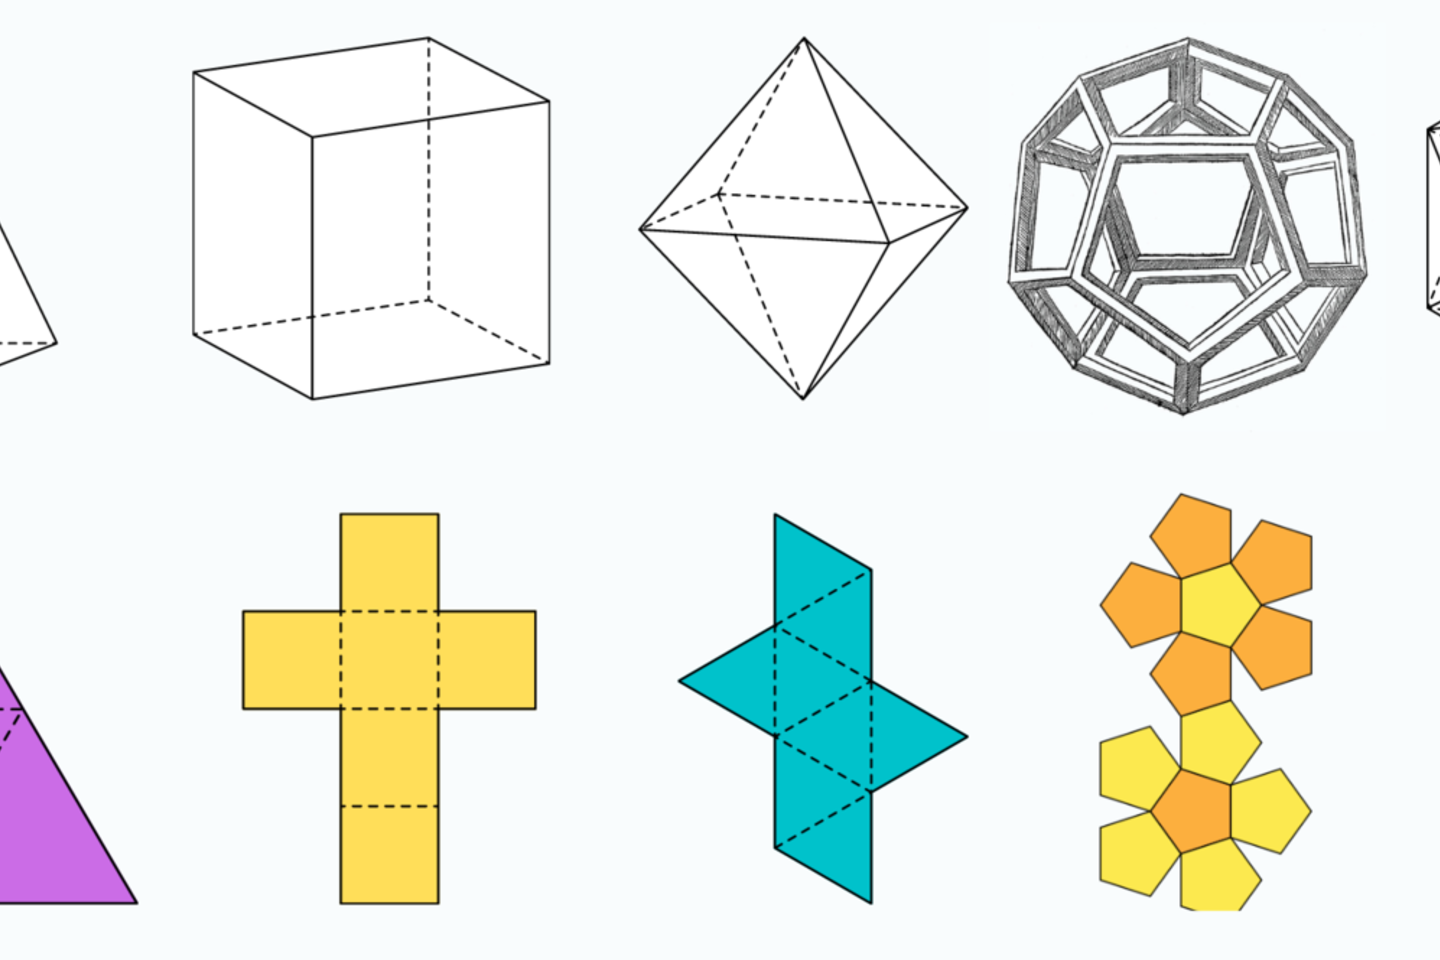  Penki Platono kūnai (tetraedras, kubas, oktaedras, dodekahedronas ir ikozaedras) ir jų vaizdai 2D plokštumoje.